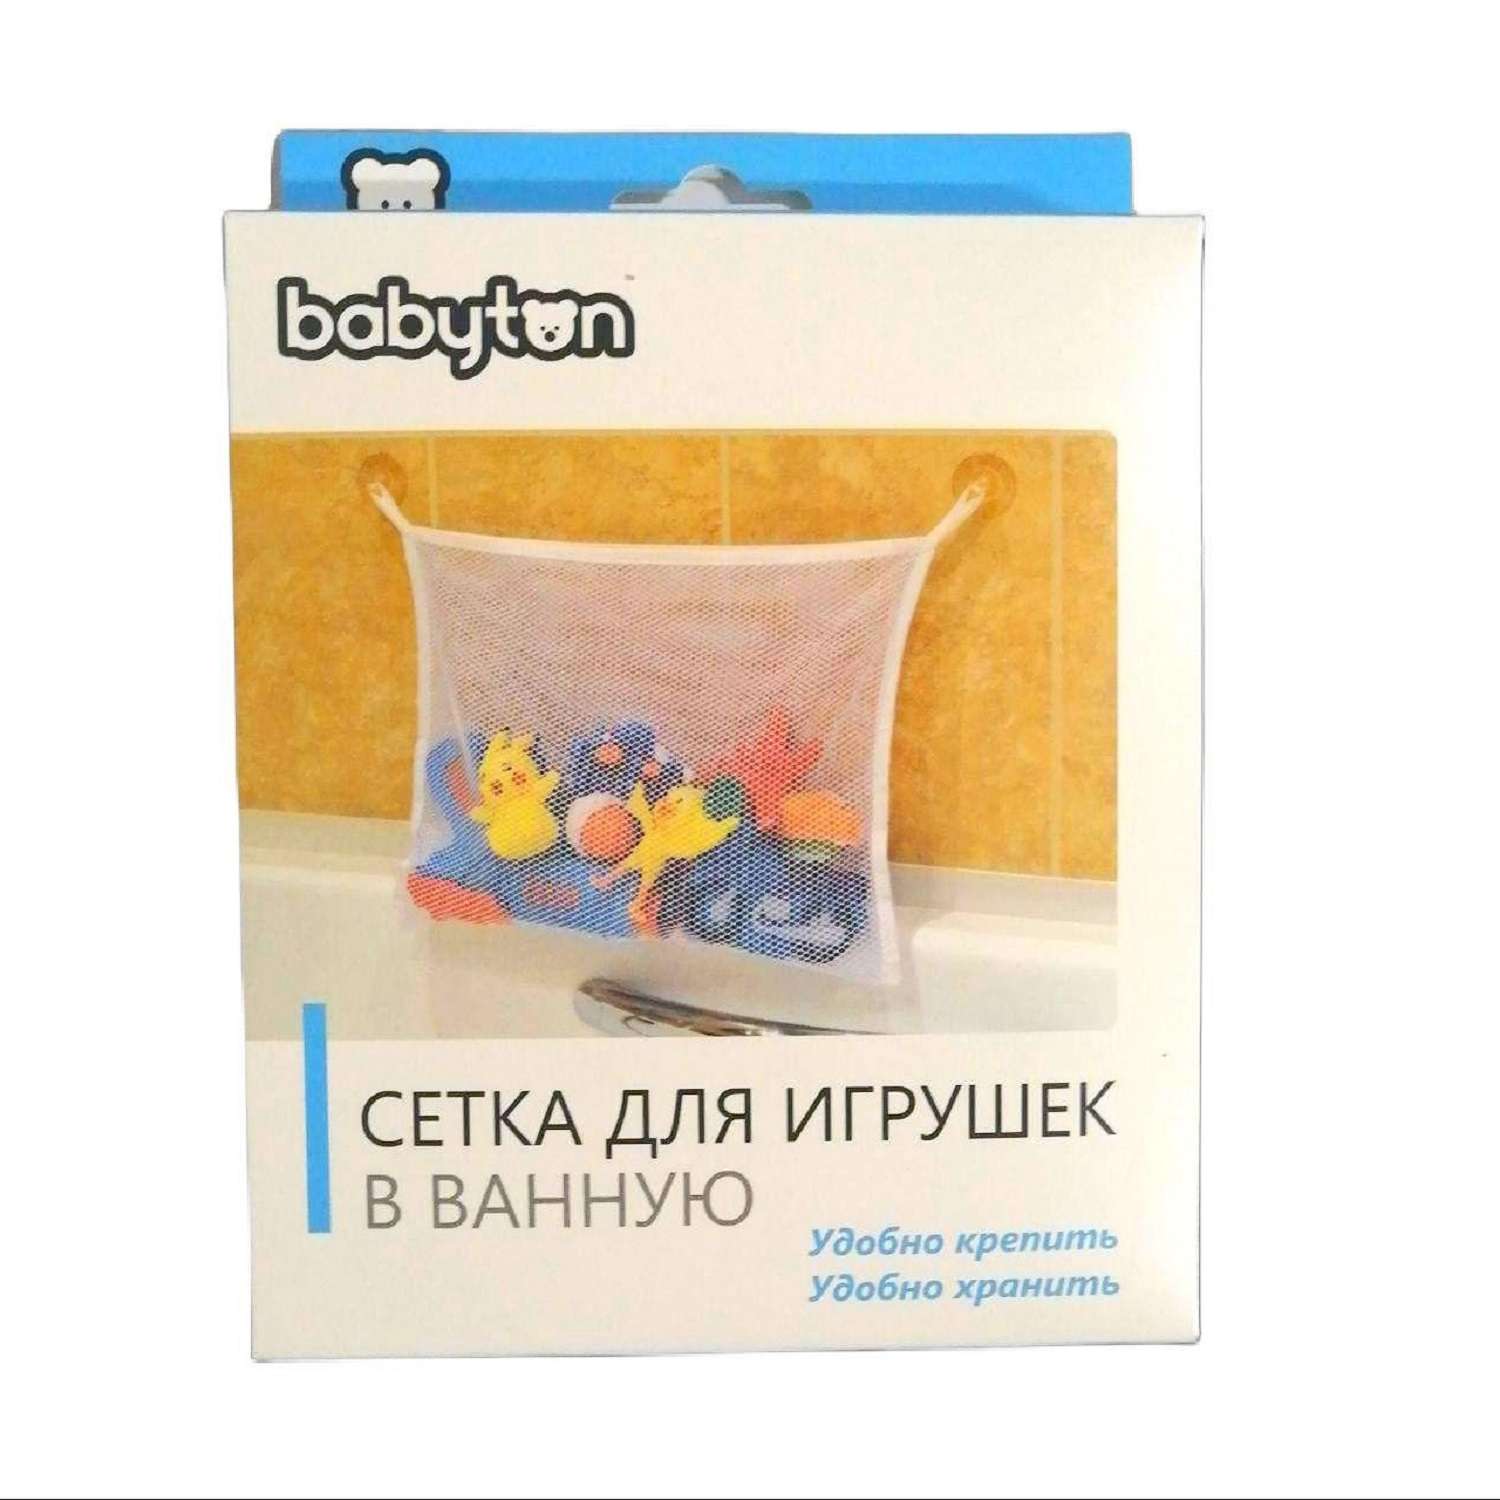 Сетка для игрушек Babyton в ванную - фото 8